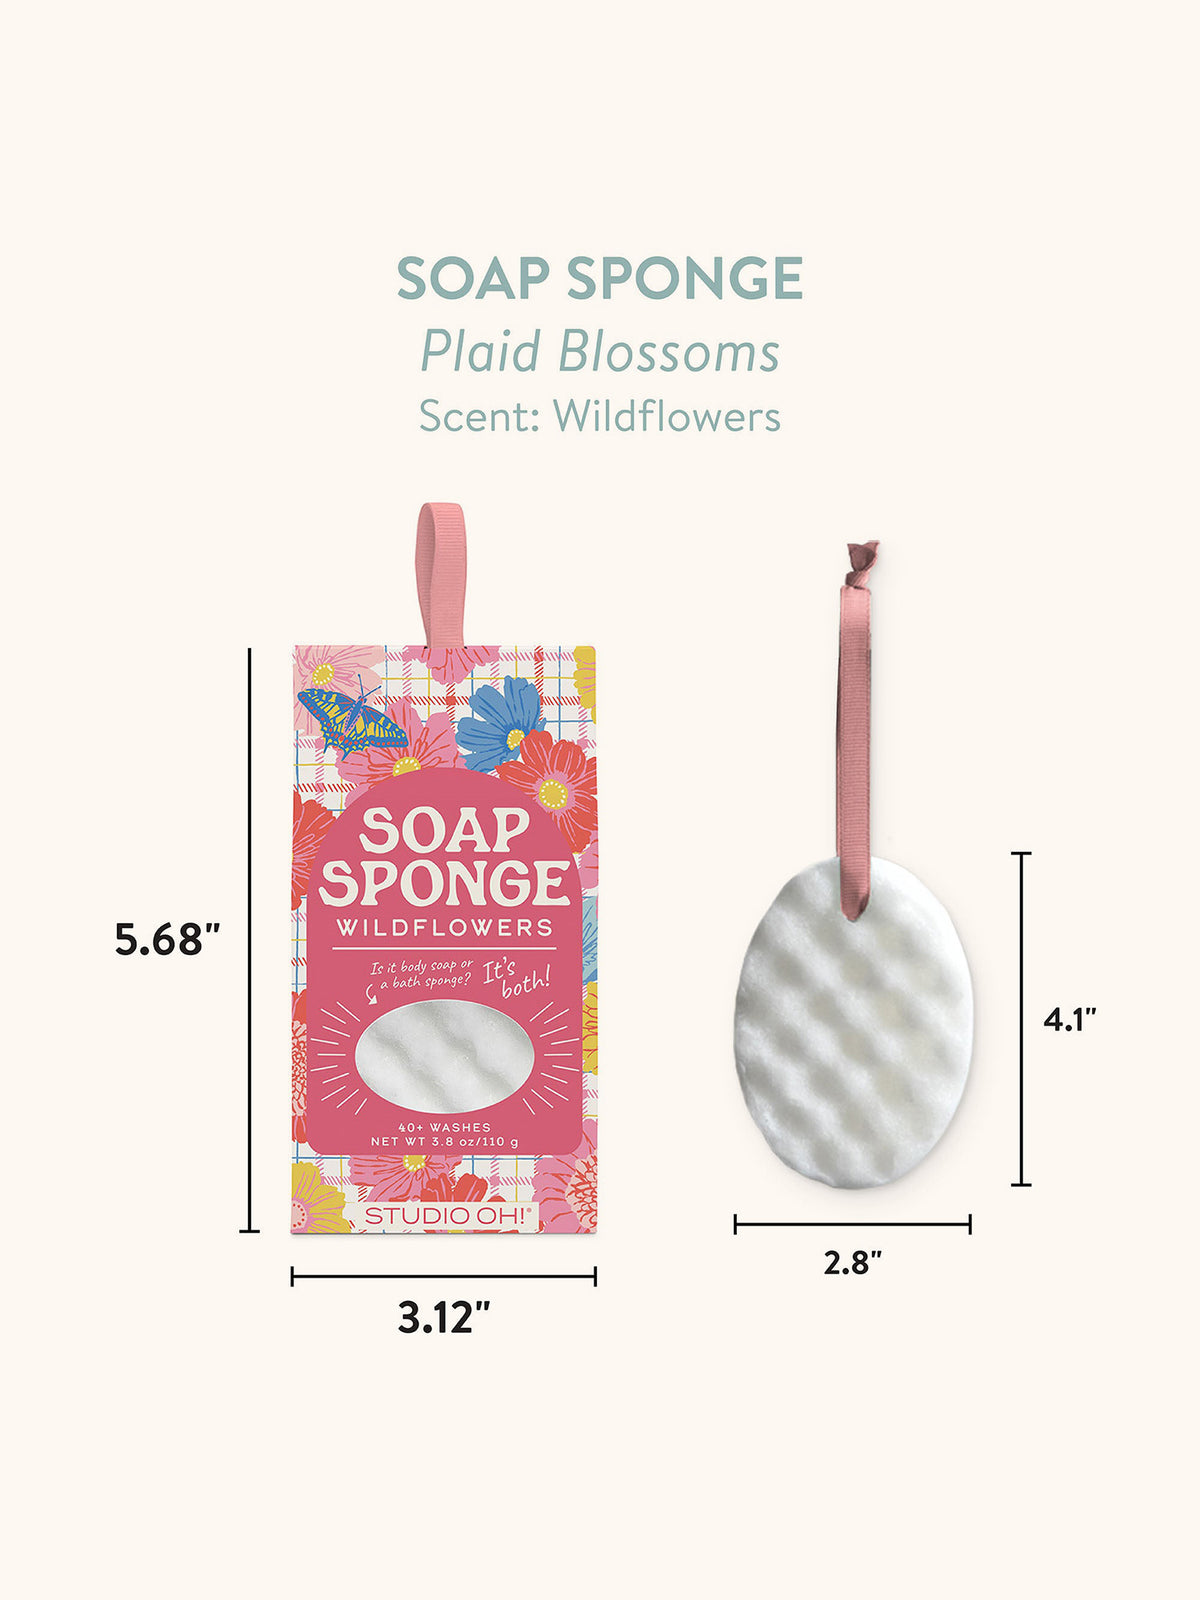 Plaid Blossoms Soap Sponge